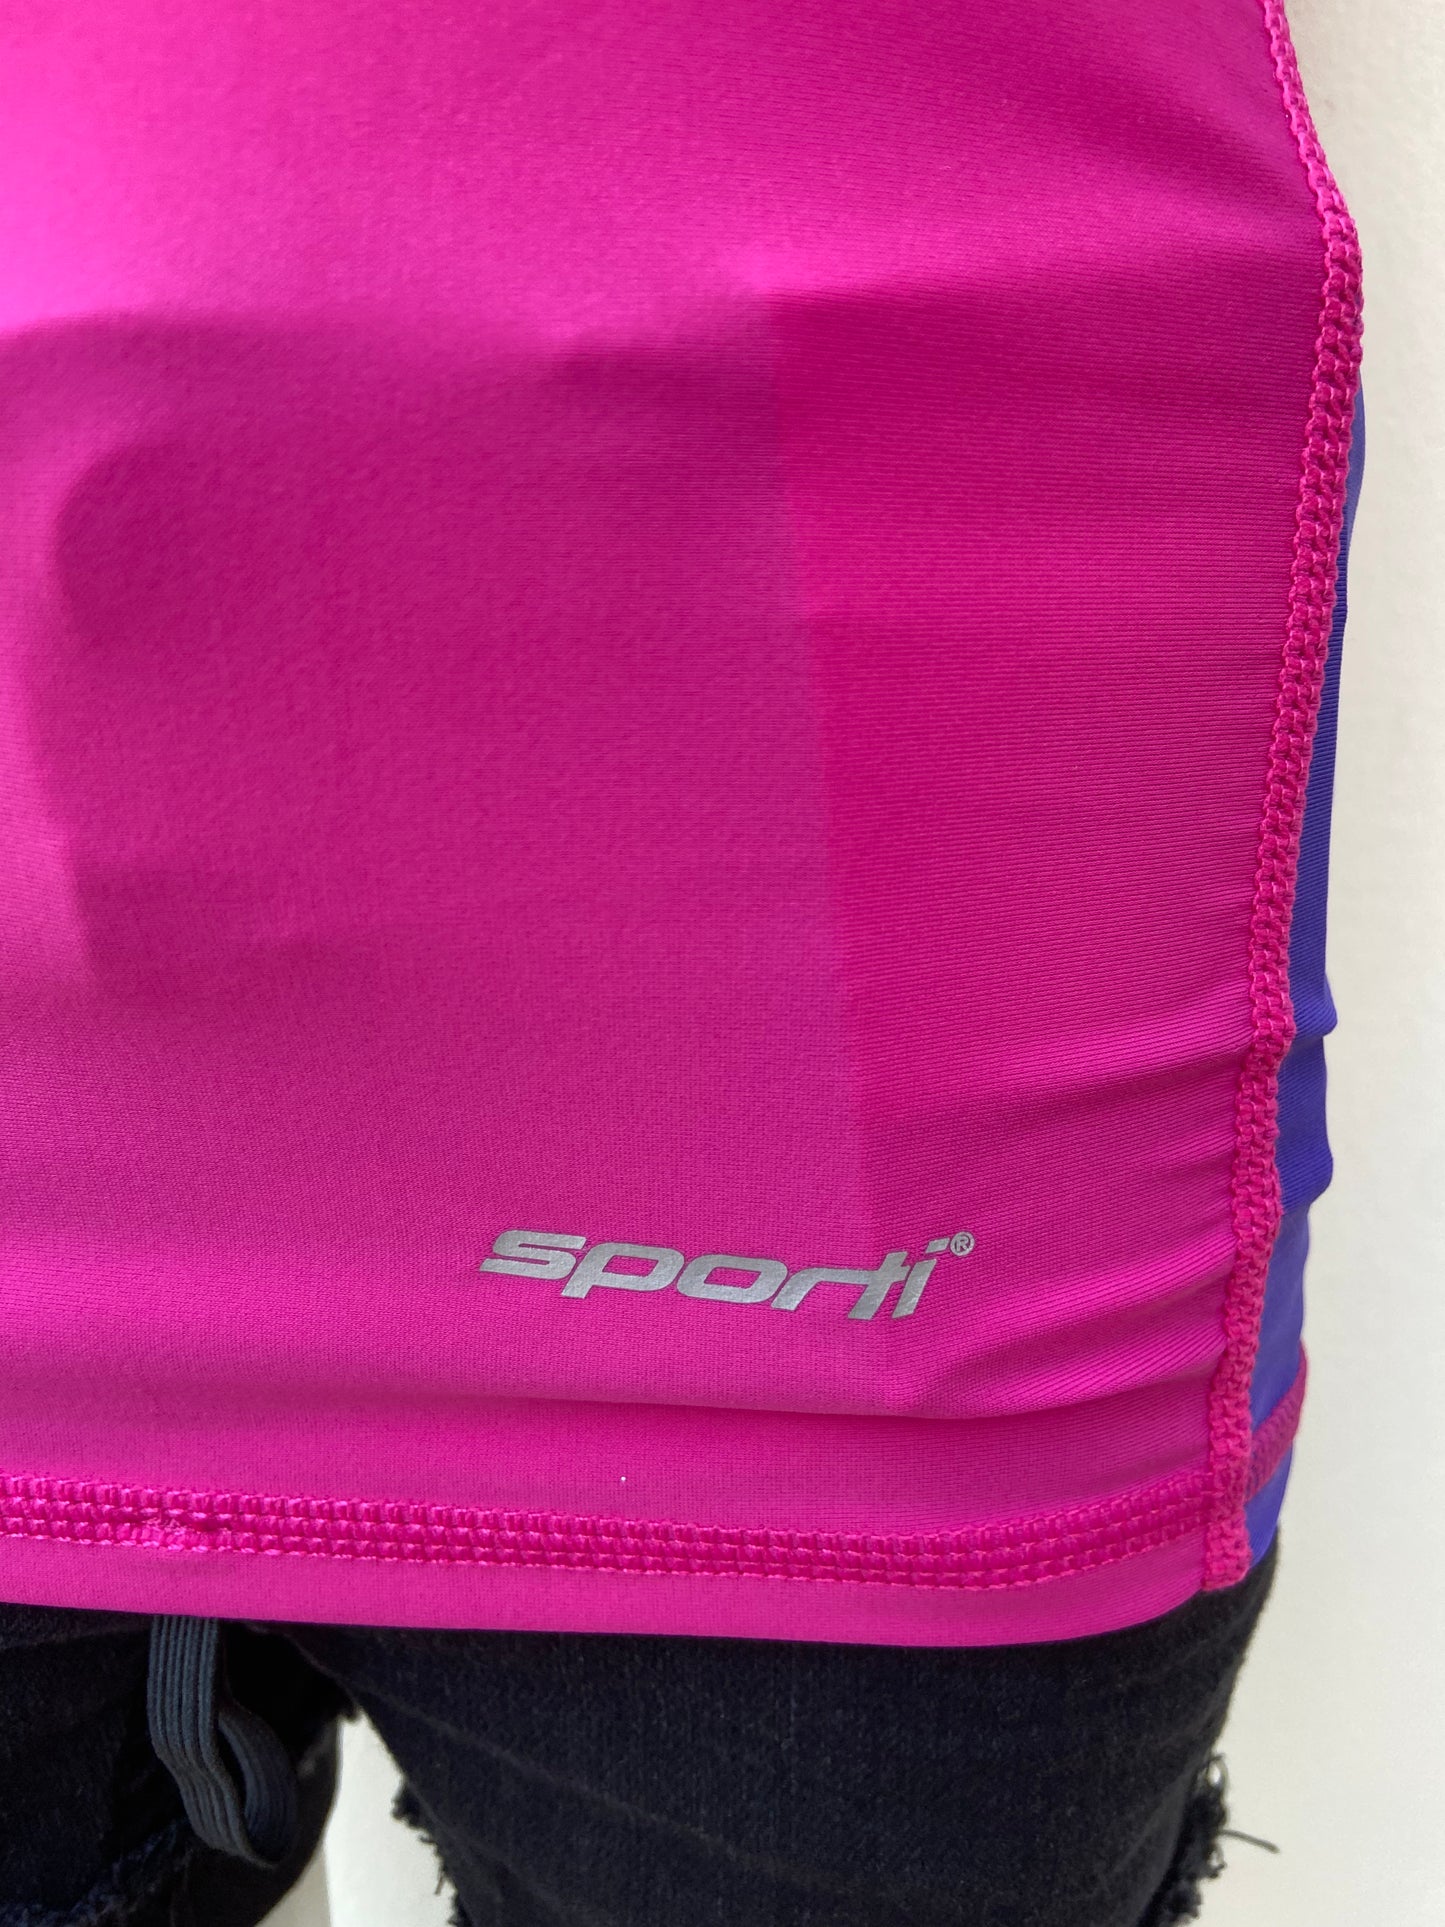 T-shirt de traje de baño Sporti original de color rosado con raya a los lados en color marado con protección UV 50+ diseño de letra SPORTI en la parte de abajo en color plateado